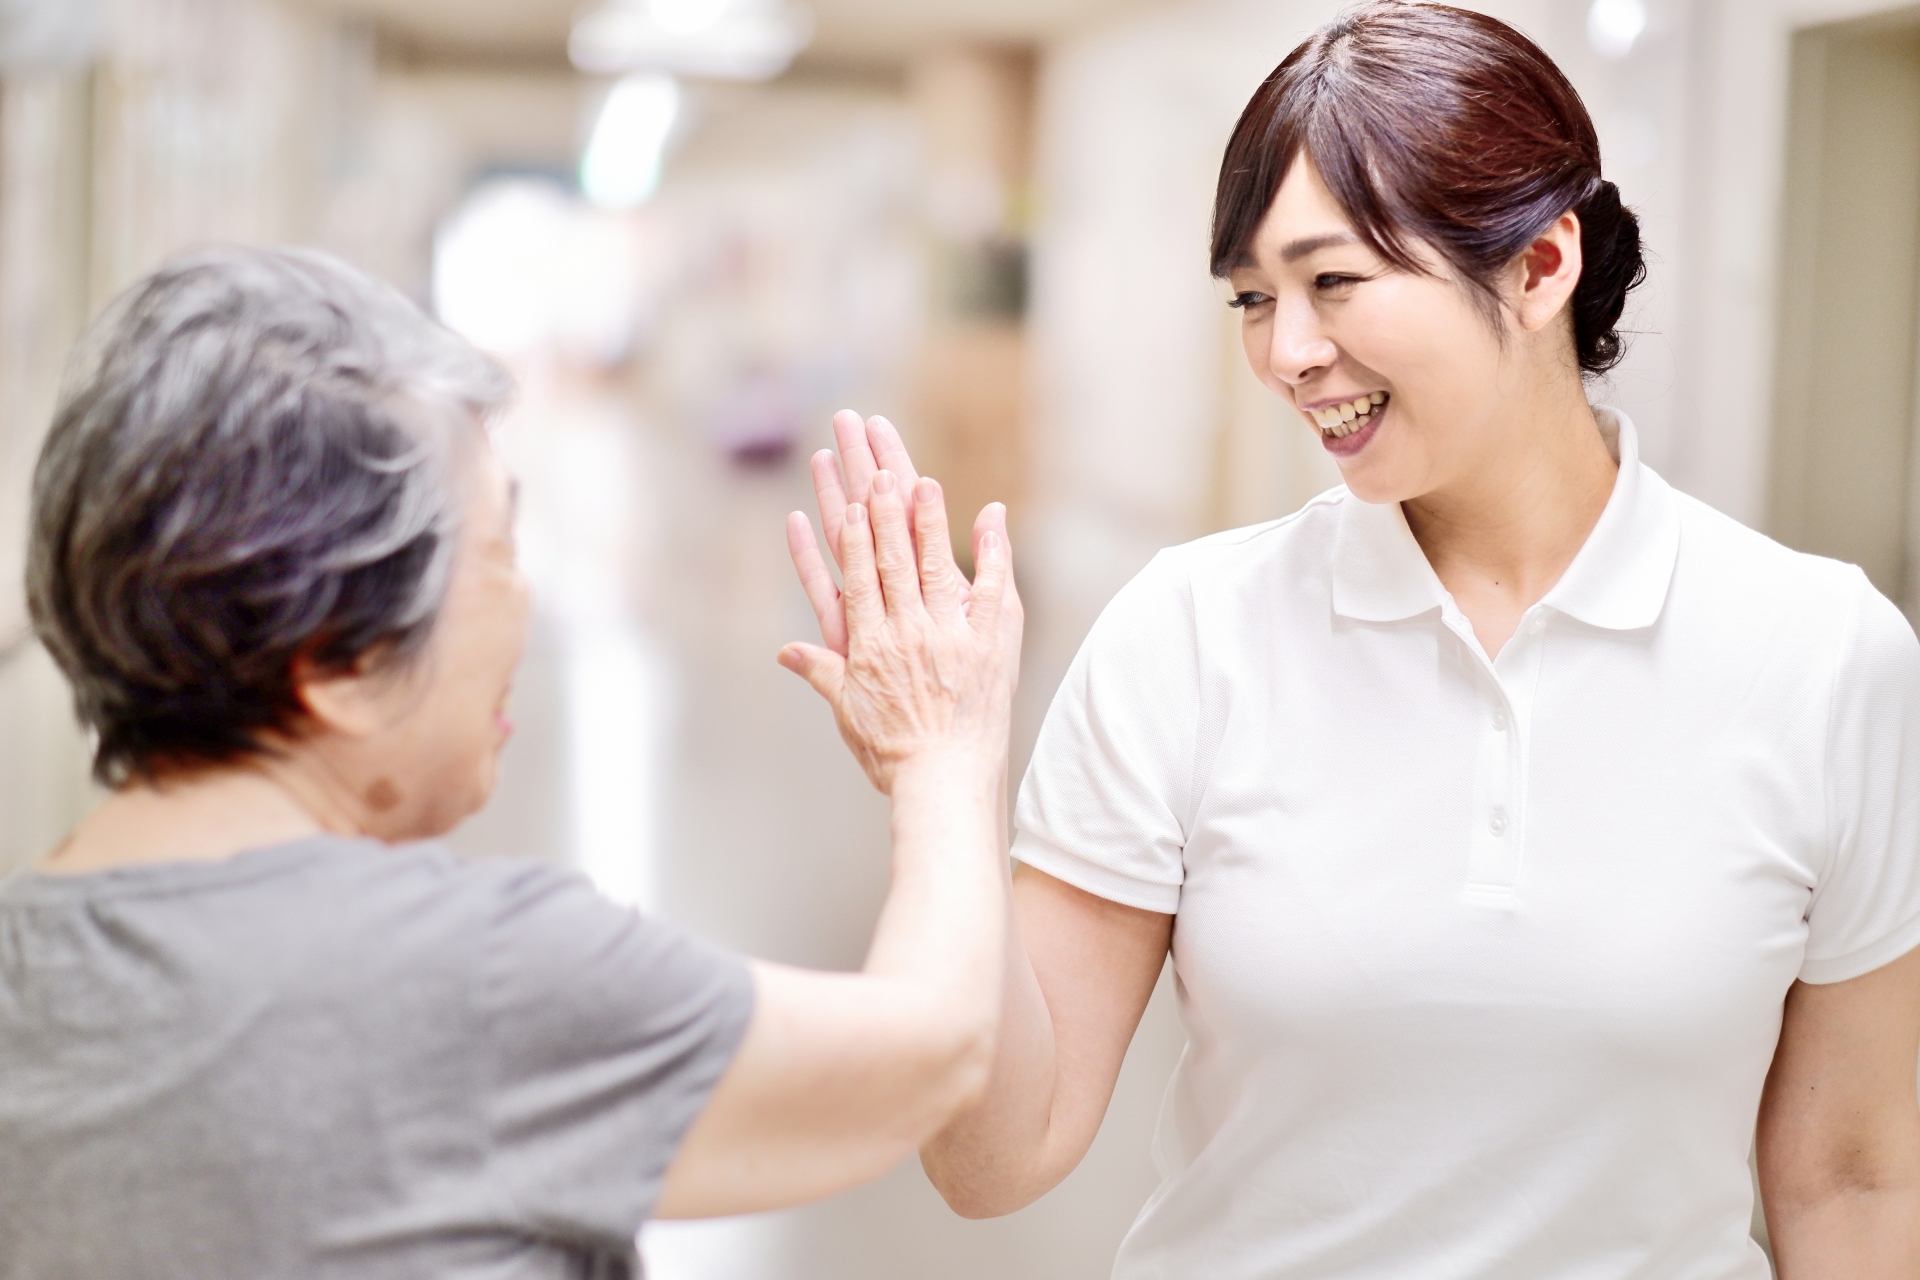 株式会社まんてんでは、富山県中新川郡立山町を拠点にデイサービス、訪問介護、ヘルパーステーション、居宅介護支援事業所、サービス付き高齢者向け住宅などの福祉サービスを展開しています。